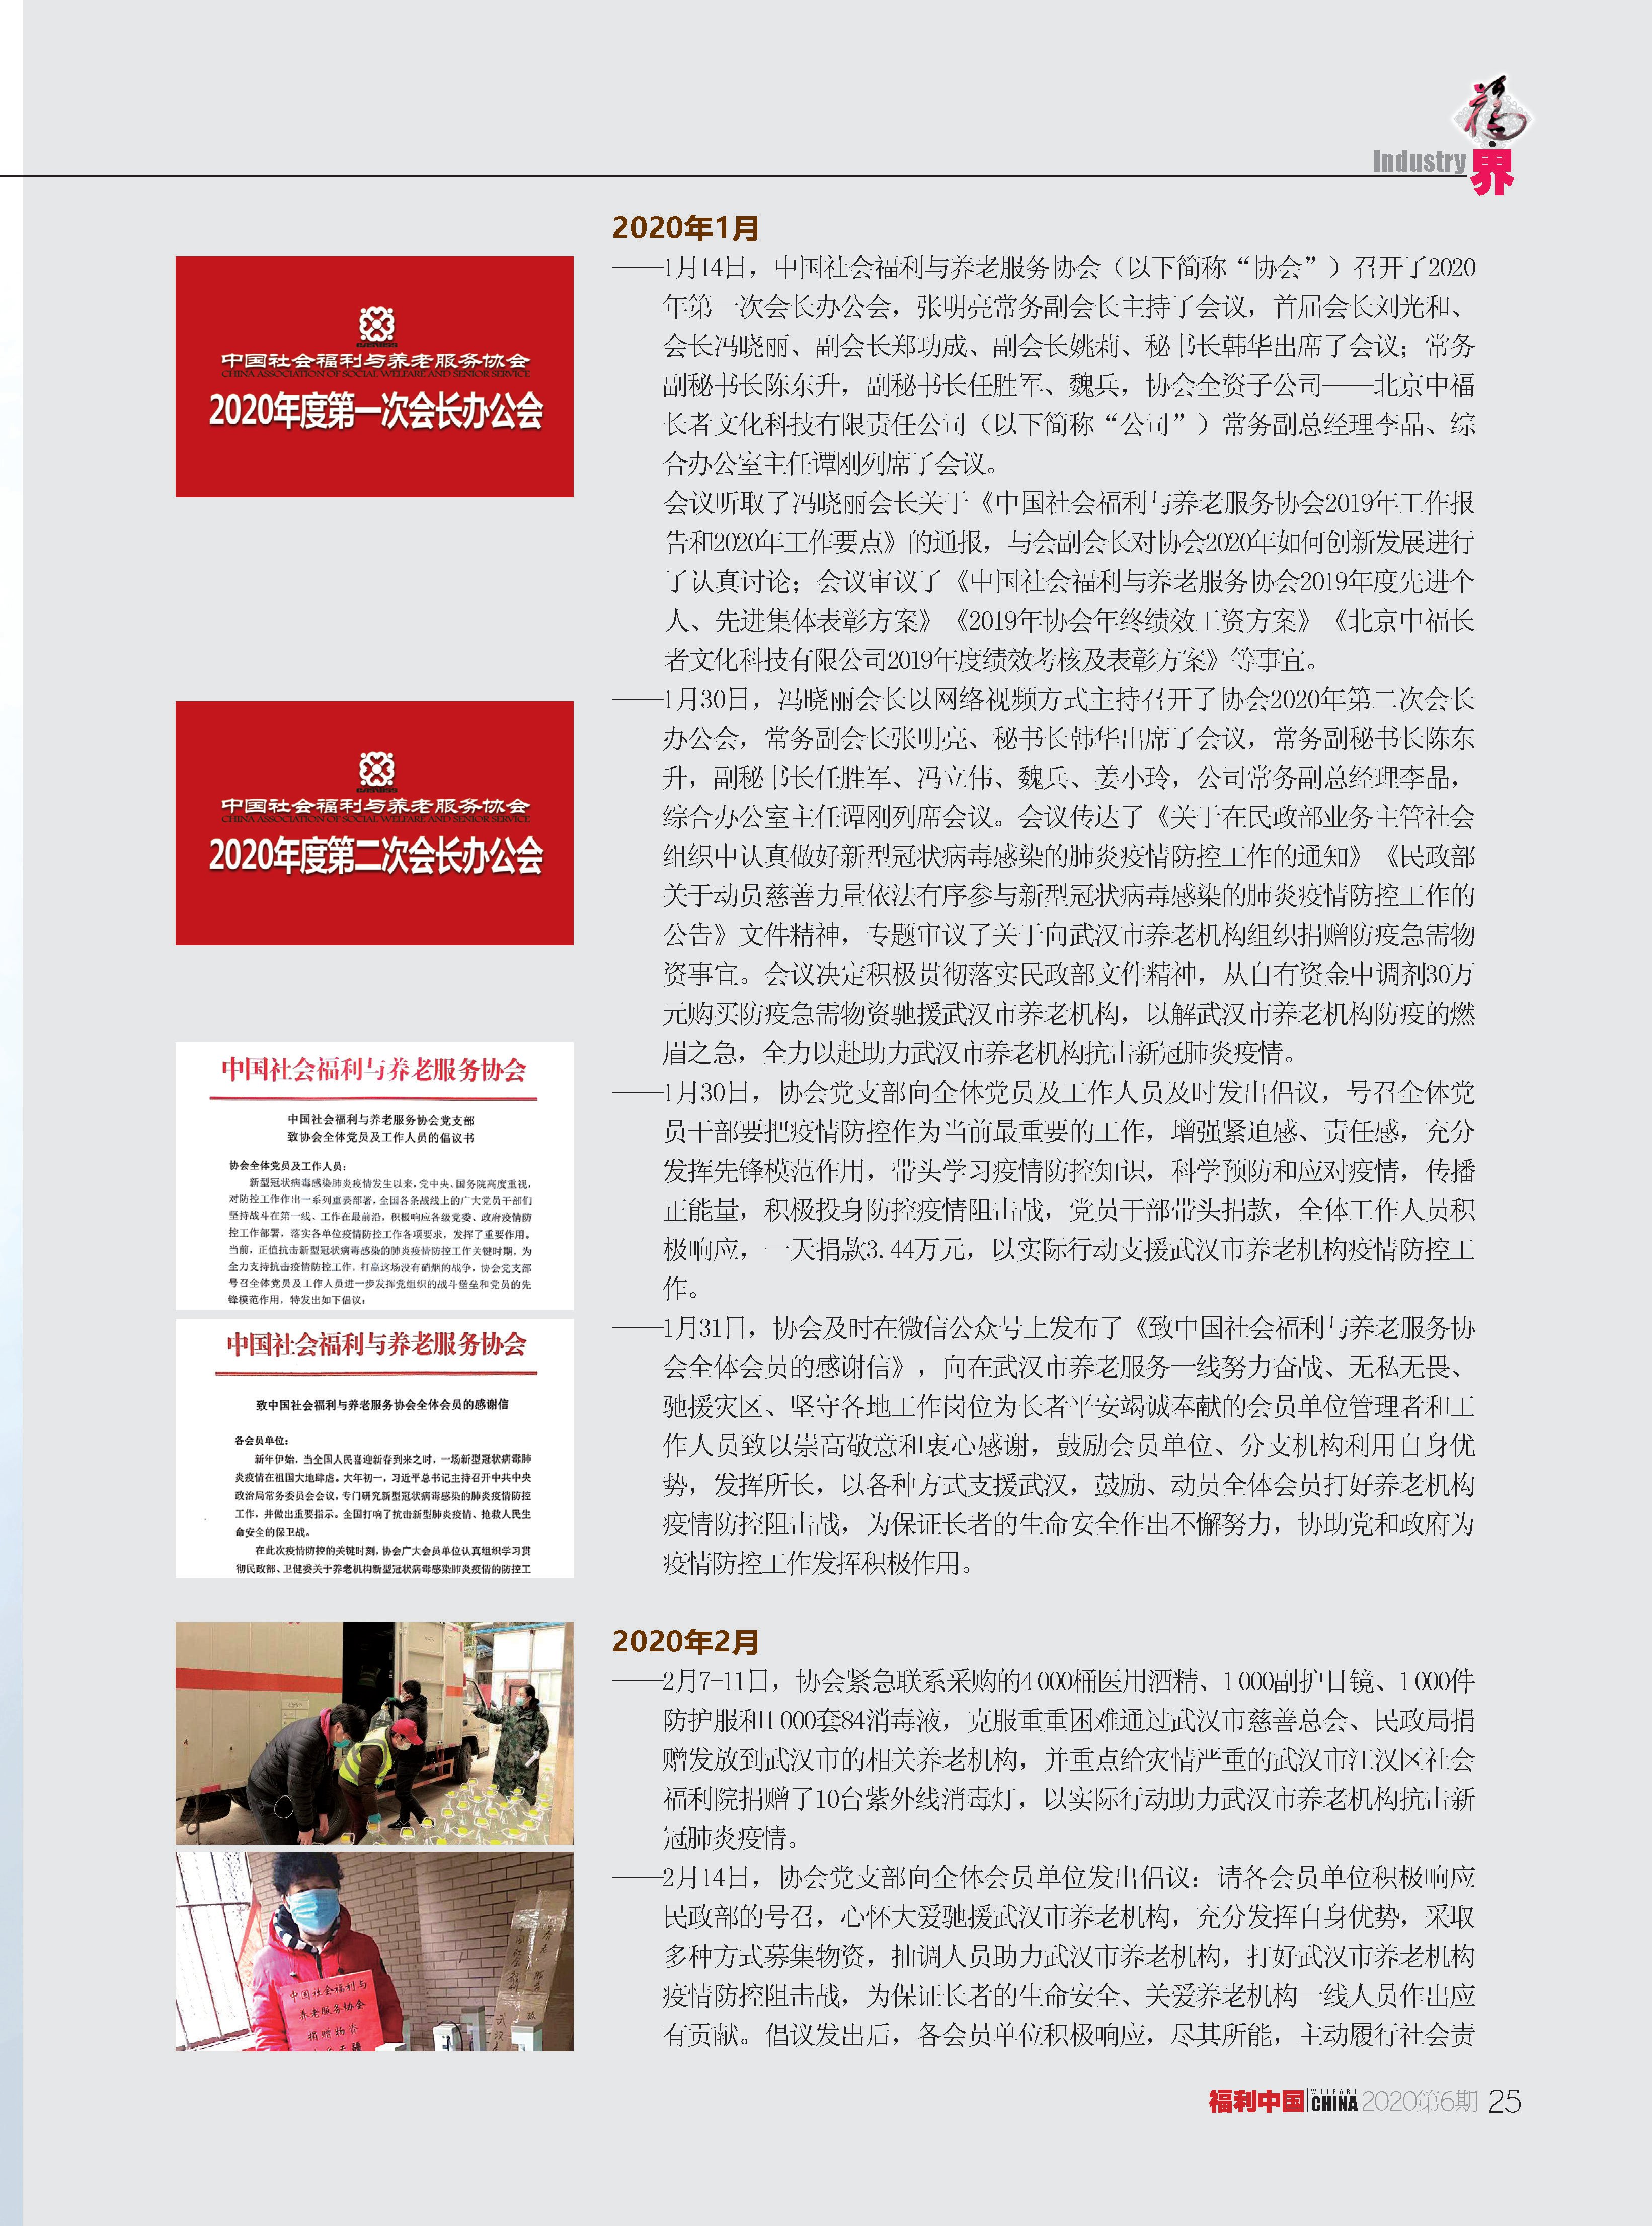 福利中国2020年6期内文_页面_25.jpg